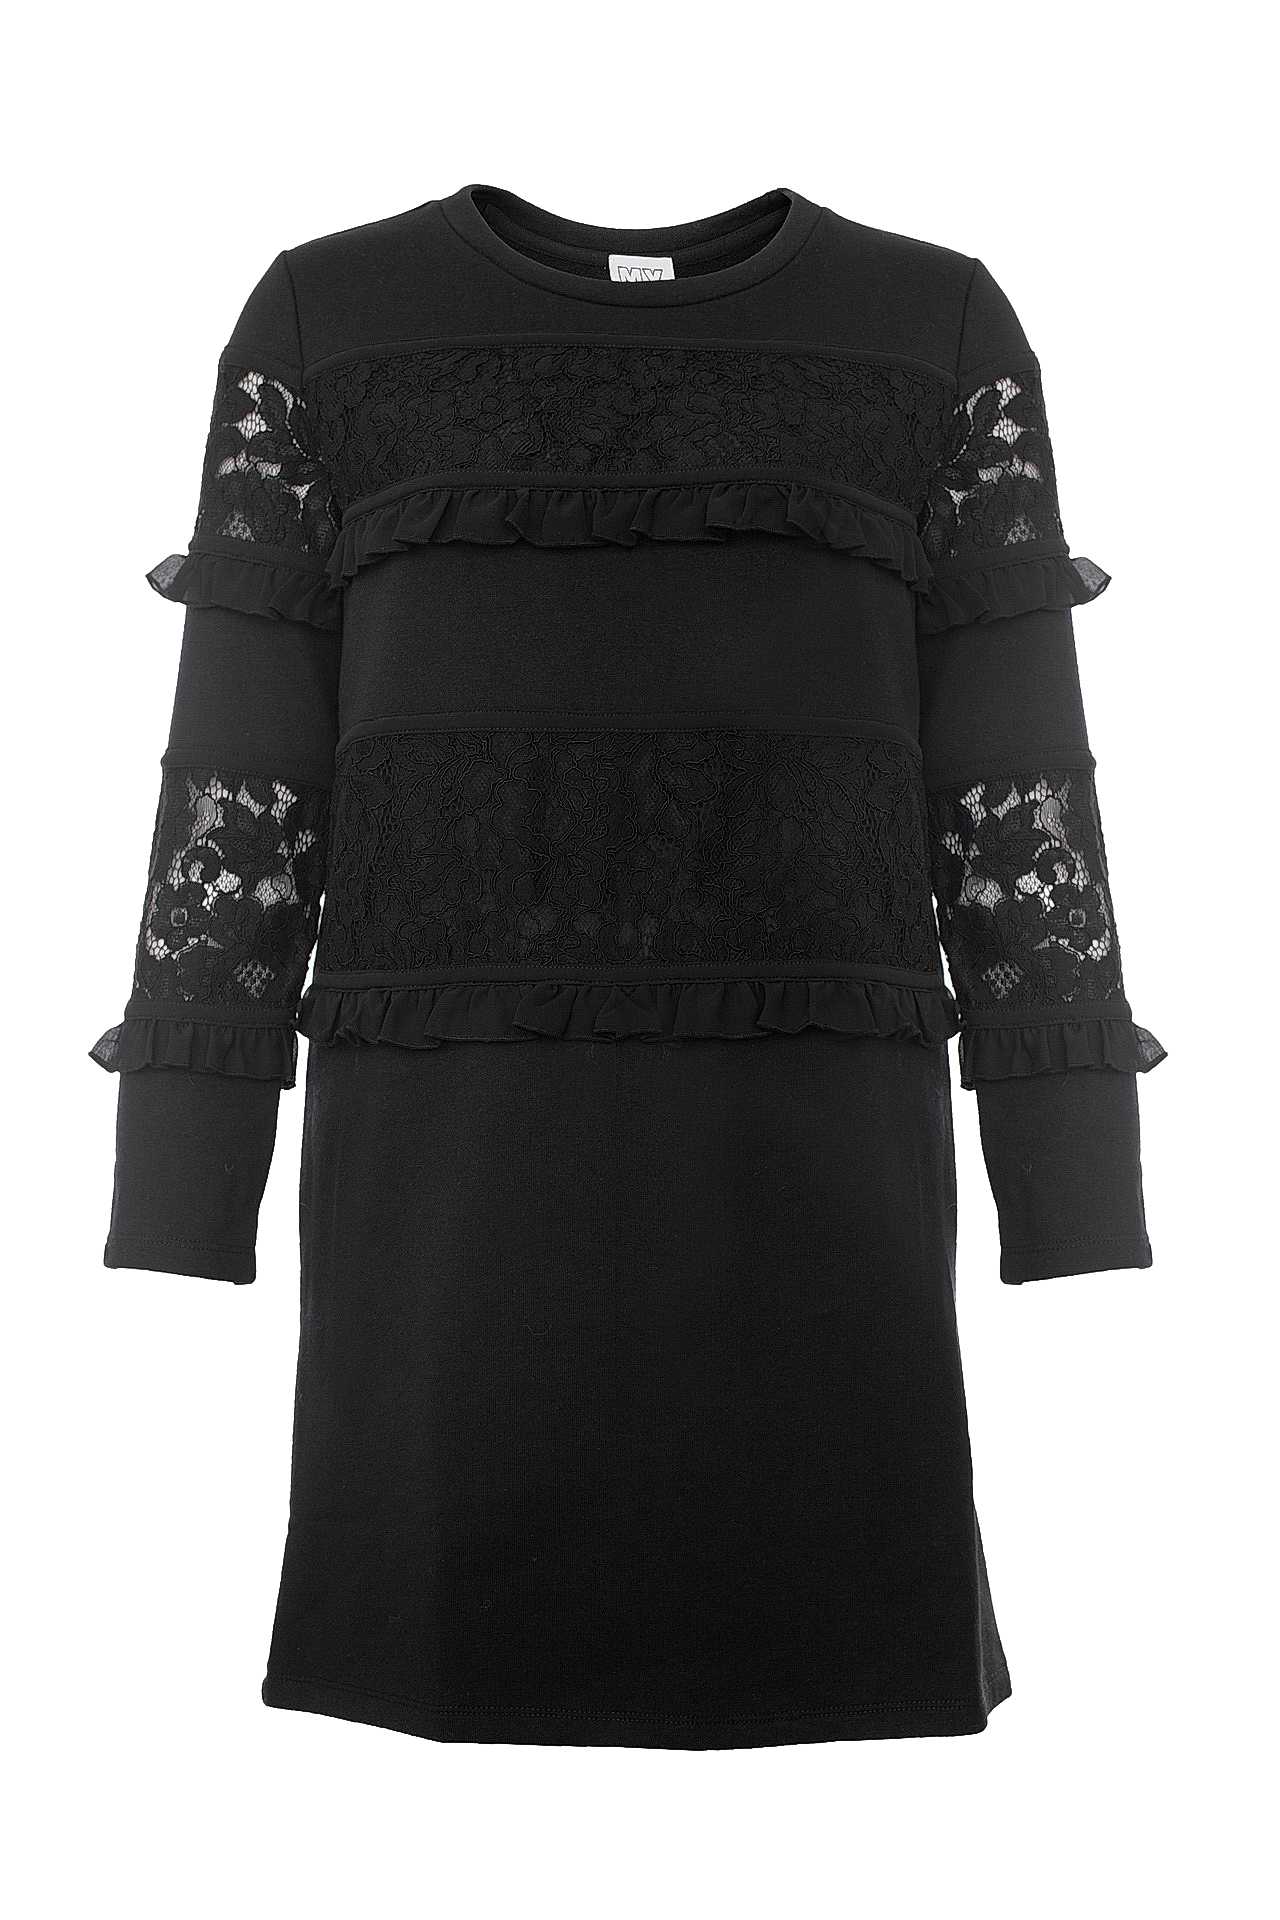 Одежда женская Платье TWIN-SET (YA72EP/18.1). Купить за 11500 руб.